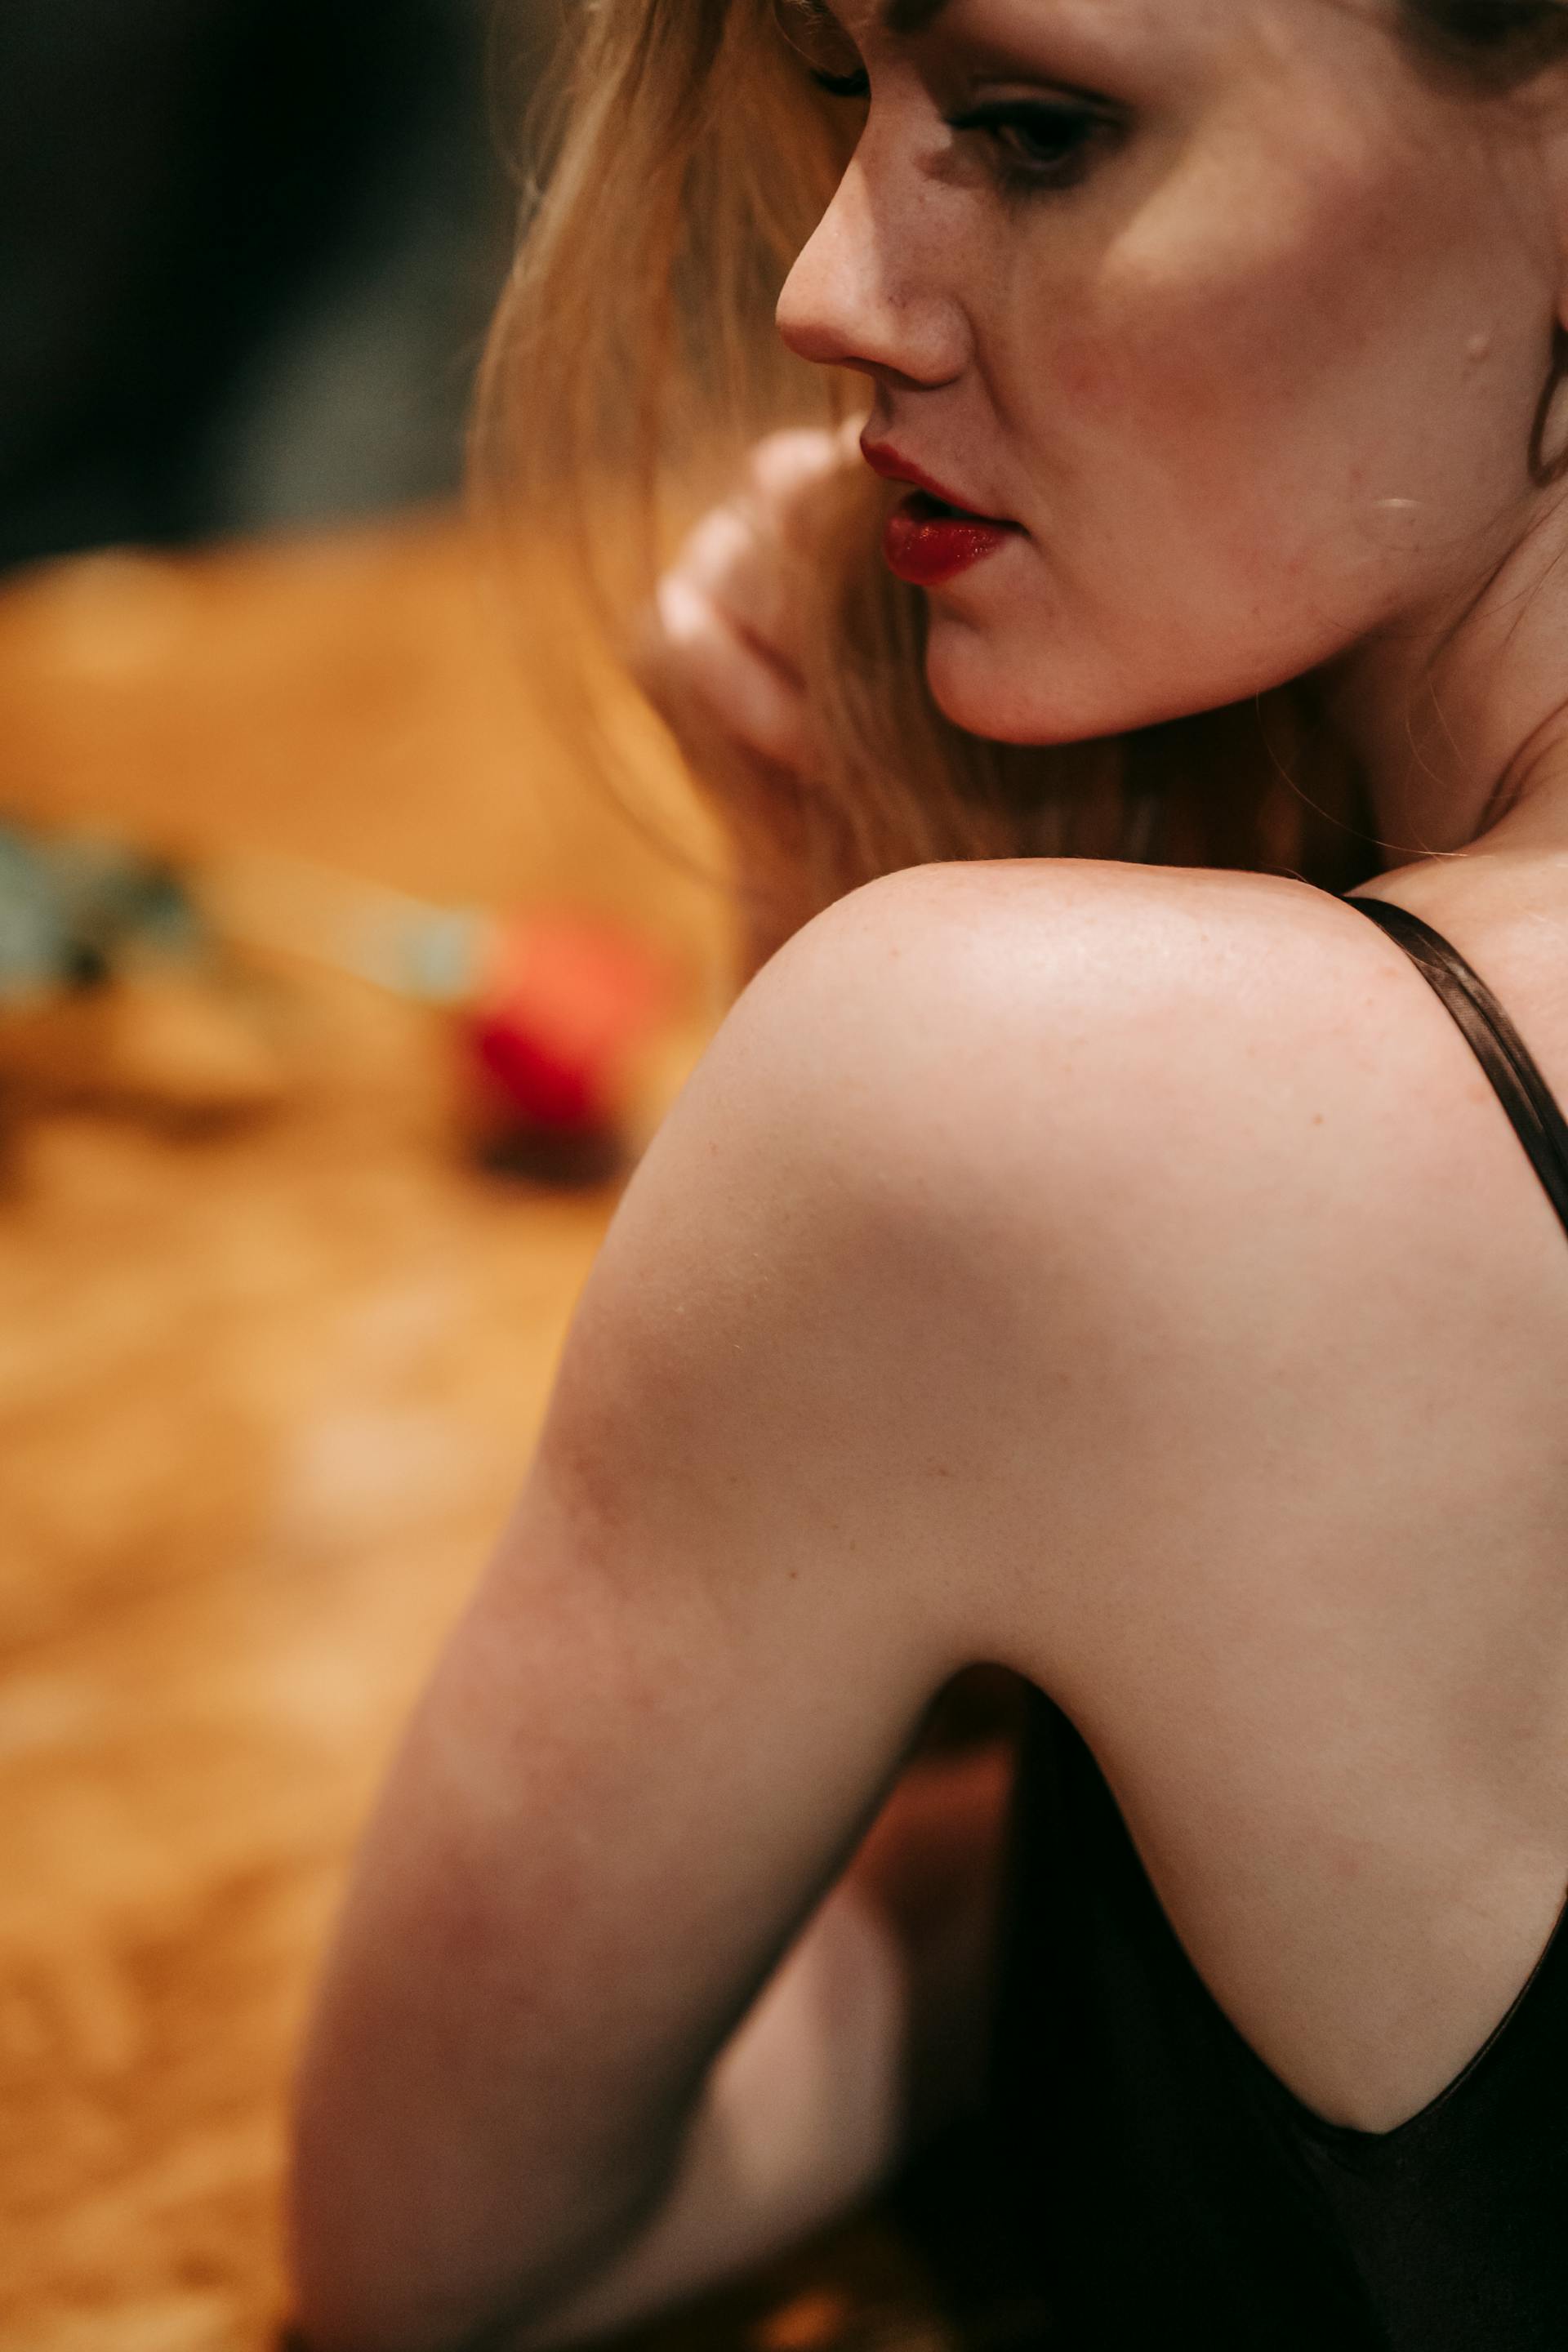 Un gros plan d'une femme qui regarde par-dessus son épaule | Source : Pexels